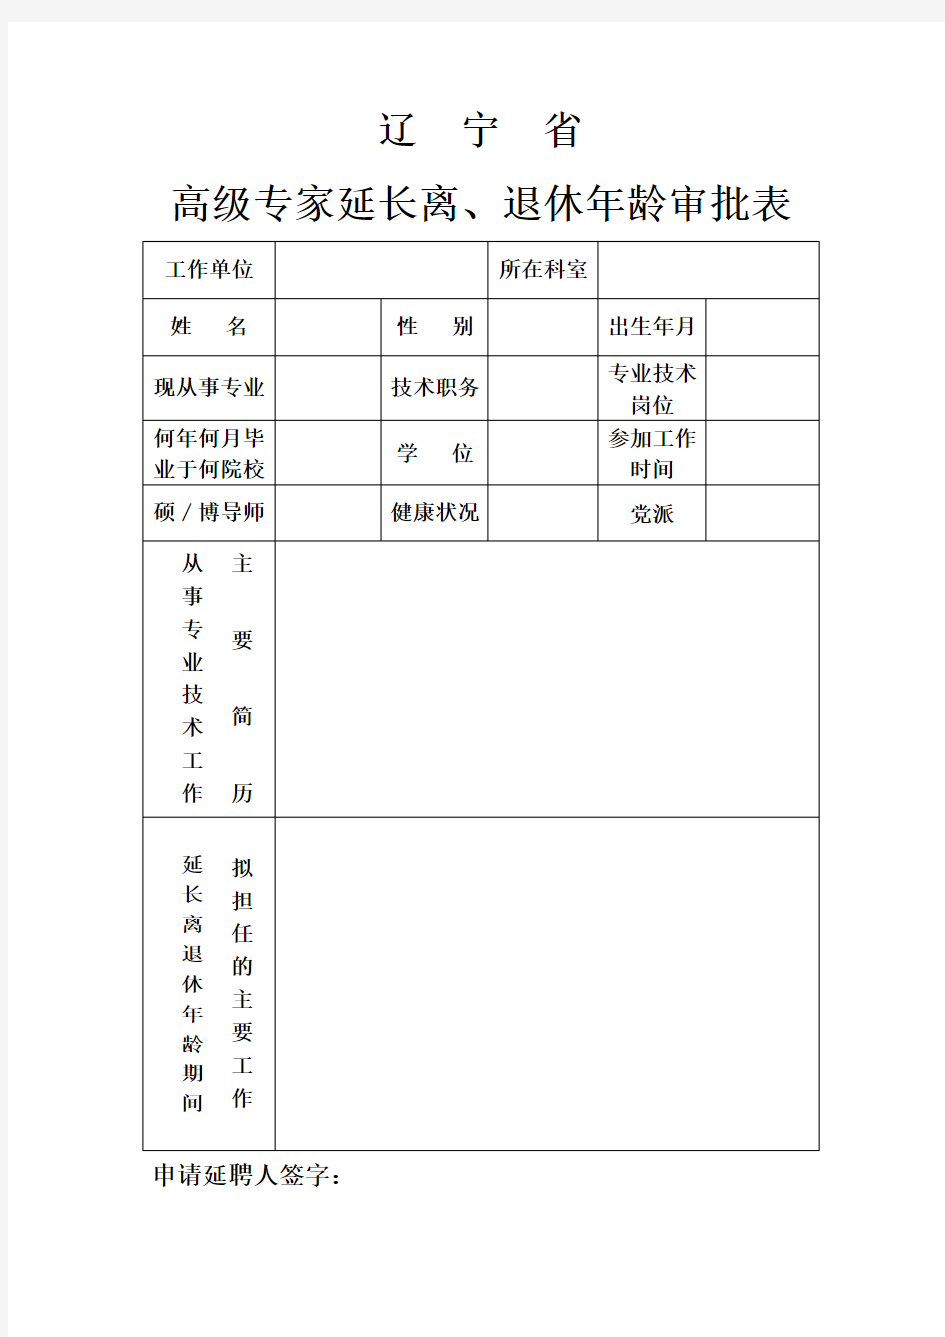 辽宁省高级专家延长离、退休年龄审批表